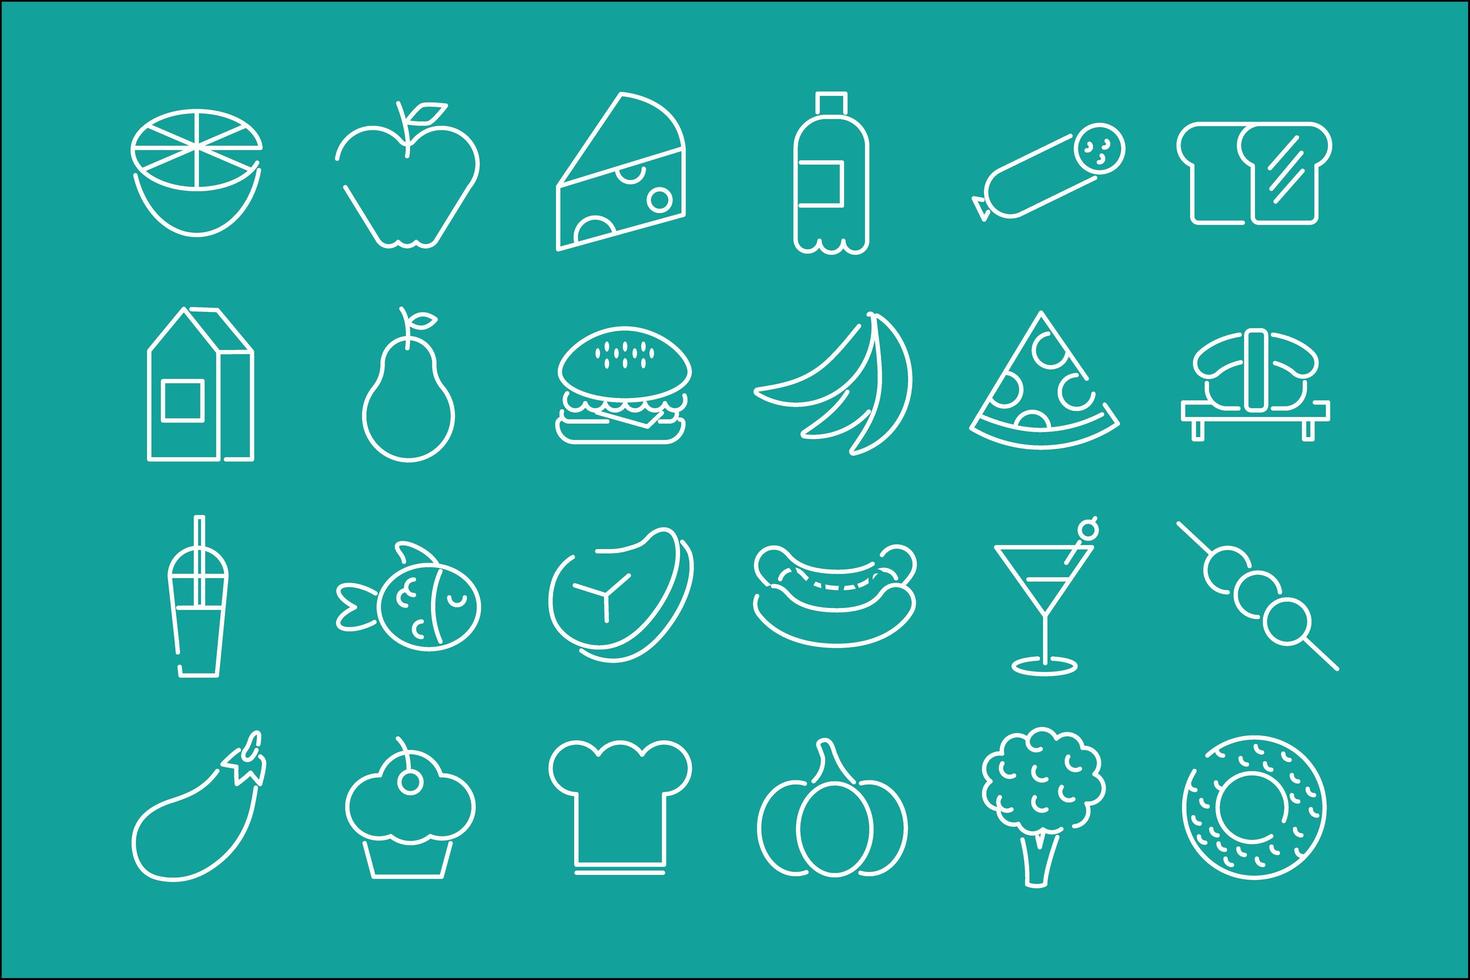 Bündel von vierundzwanzig Nahrungsmittelsymbolen in einem grünen Hintergrund vektor